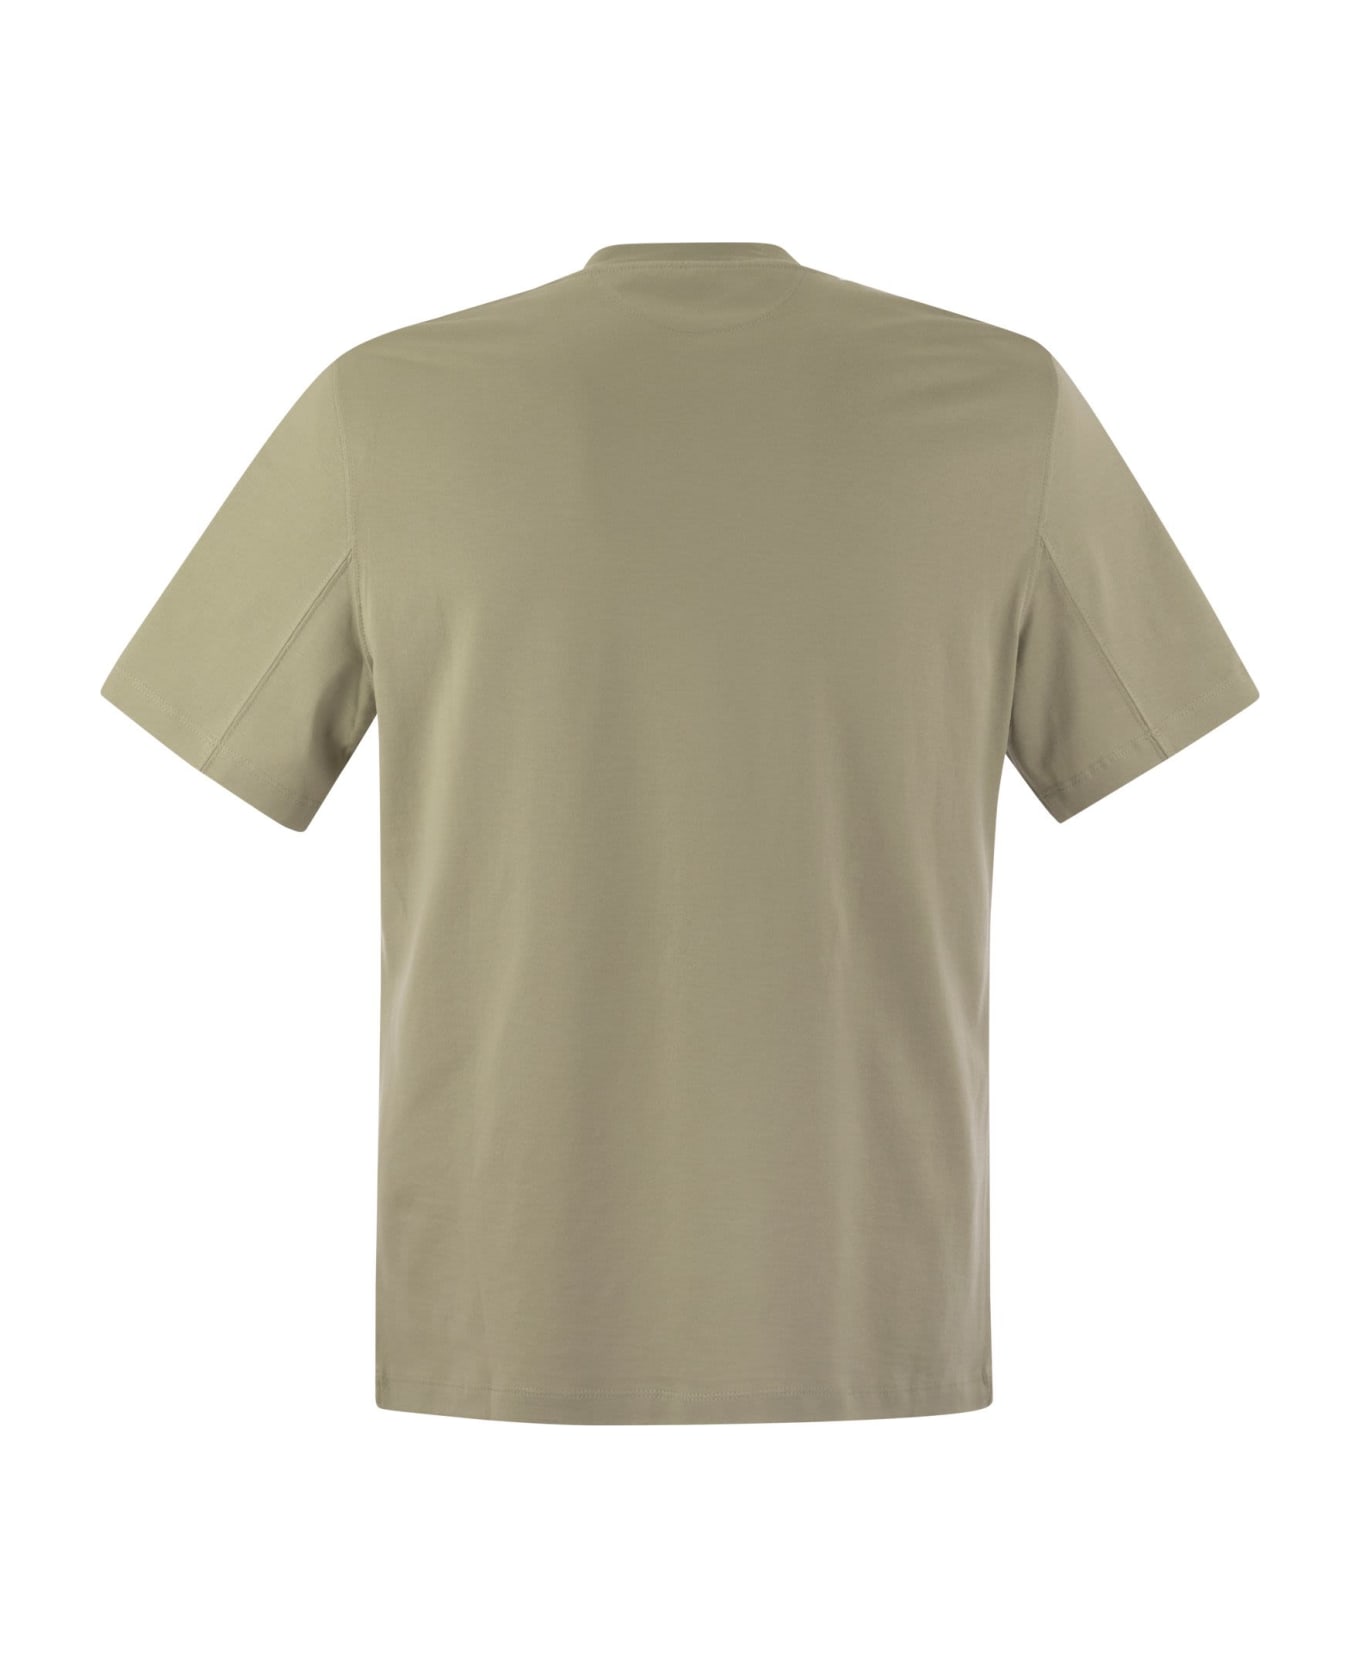 Brunello Cucinelli Cotton Jersey T-shirt With Print - Beige